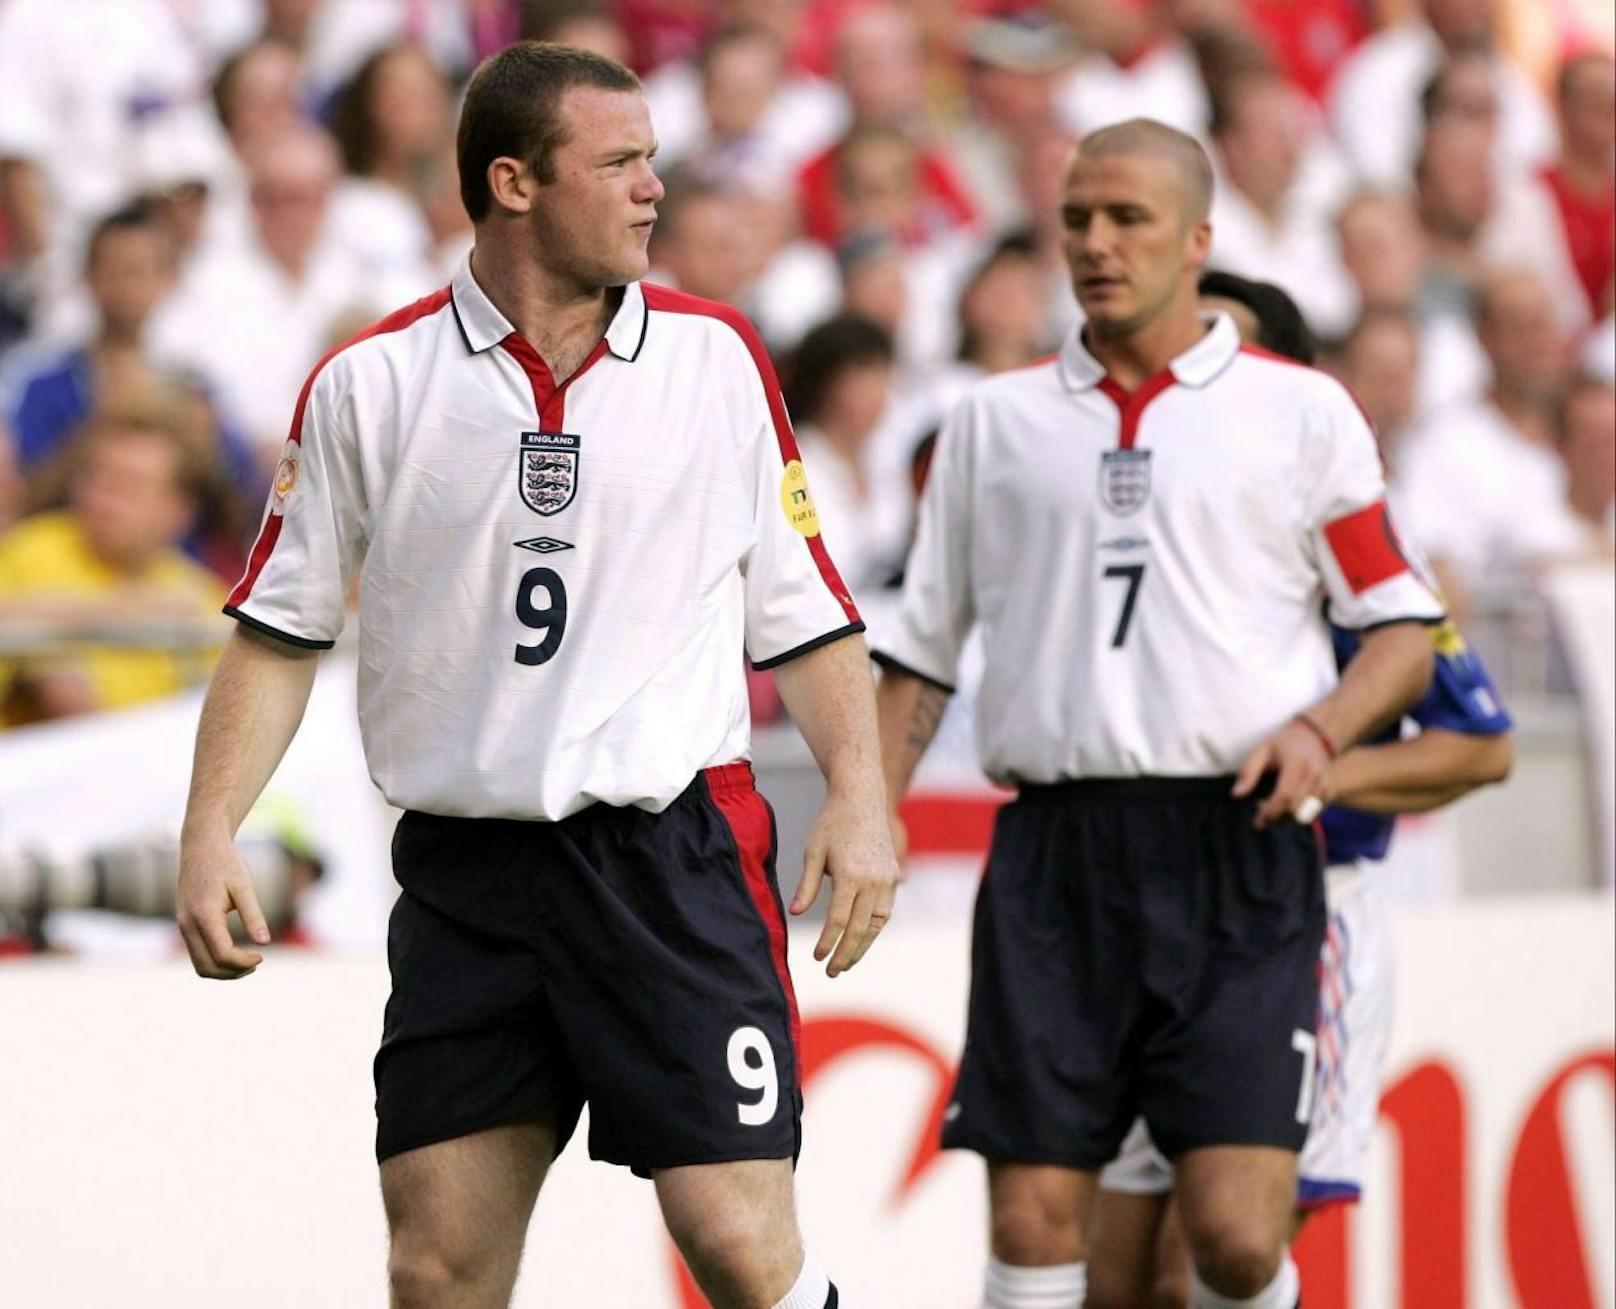 Der junge Wanye Rooney an der Seite von David Beckham und Co.